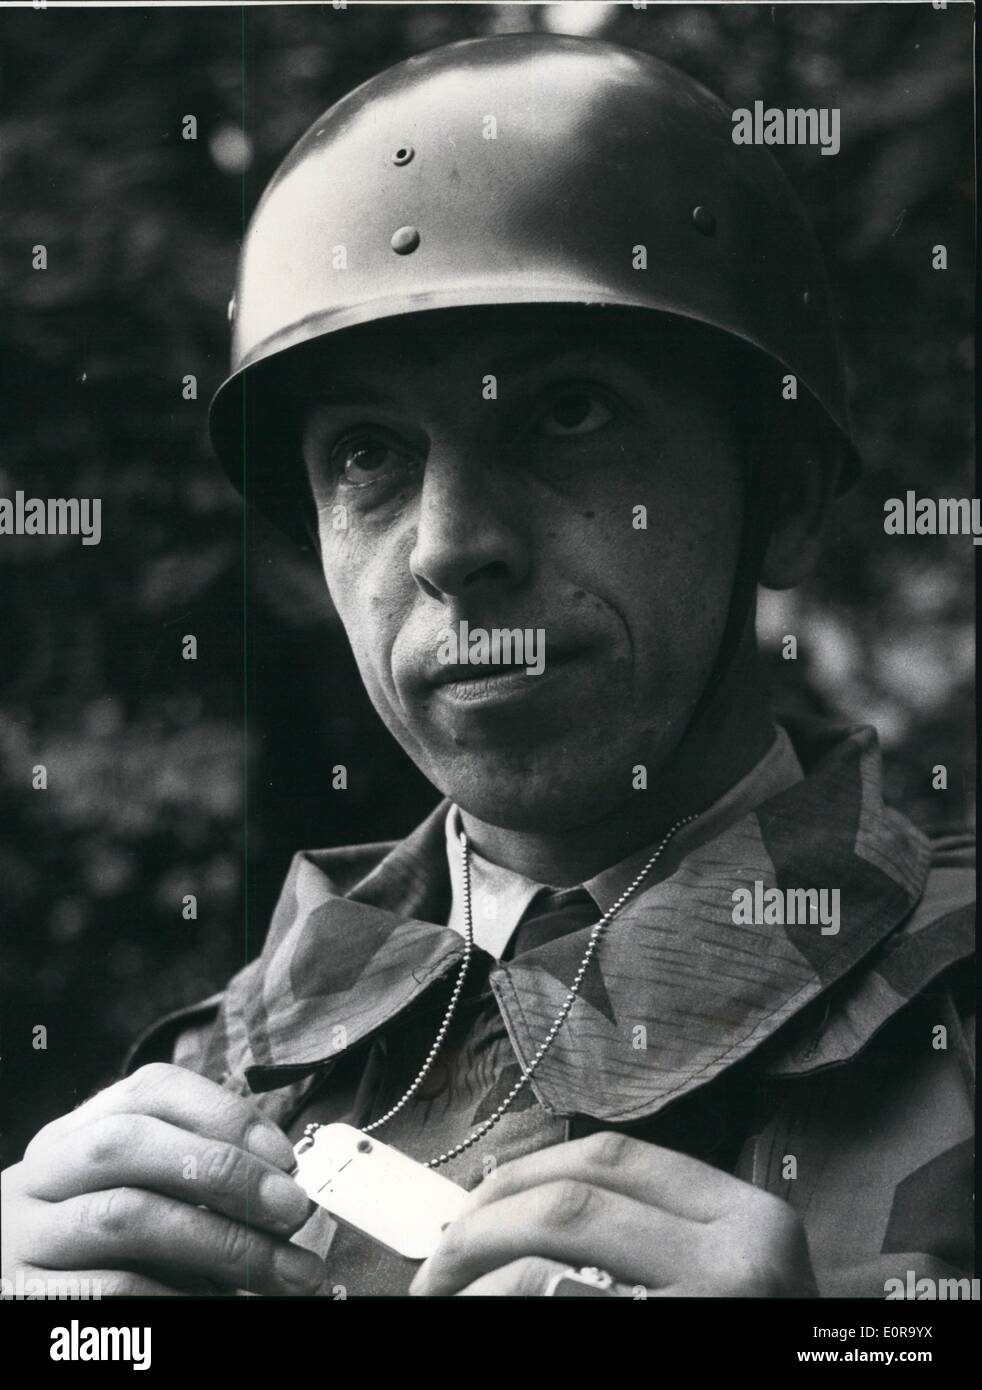 Sept. 09, 1958 - die deutsche Armee hat Actinometer: die deutsche Armee habe jetzt zum erste Mal im Herbst Manövrieren der Actionometer, die im Notfall zeigt die Gefahr der Strahlen der Soldat von nuklearen Waffen bedrohen. Der Soldat trägt die Actionometer um den Hals, und es ist auch seine Kennzeichnung. Stockfoto